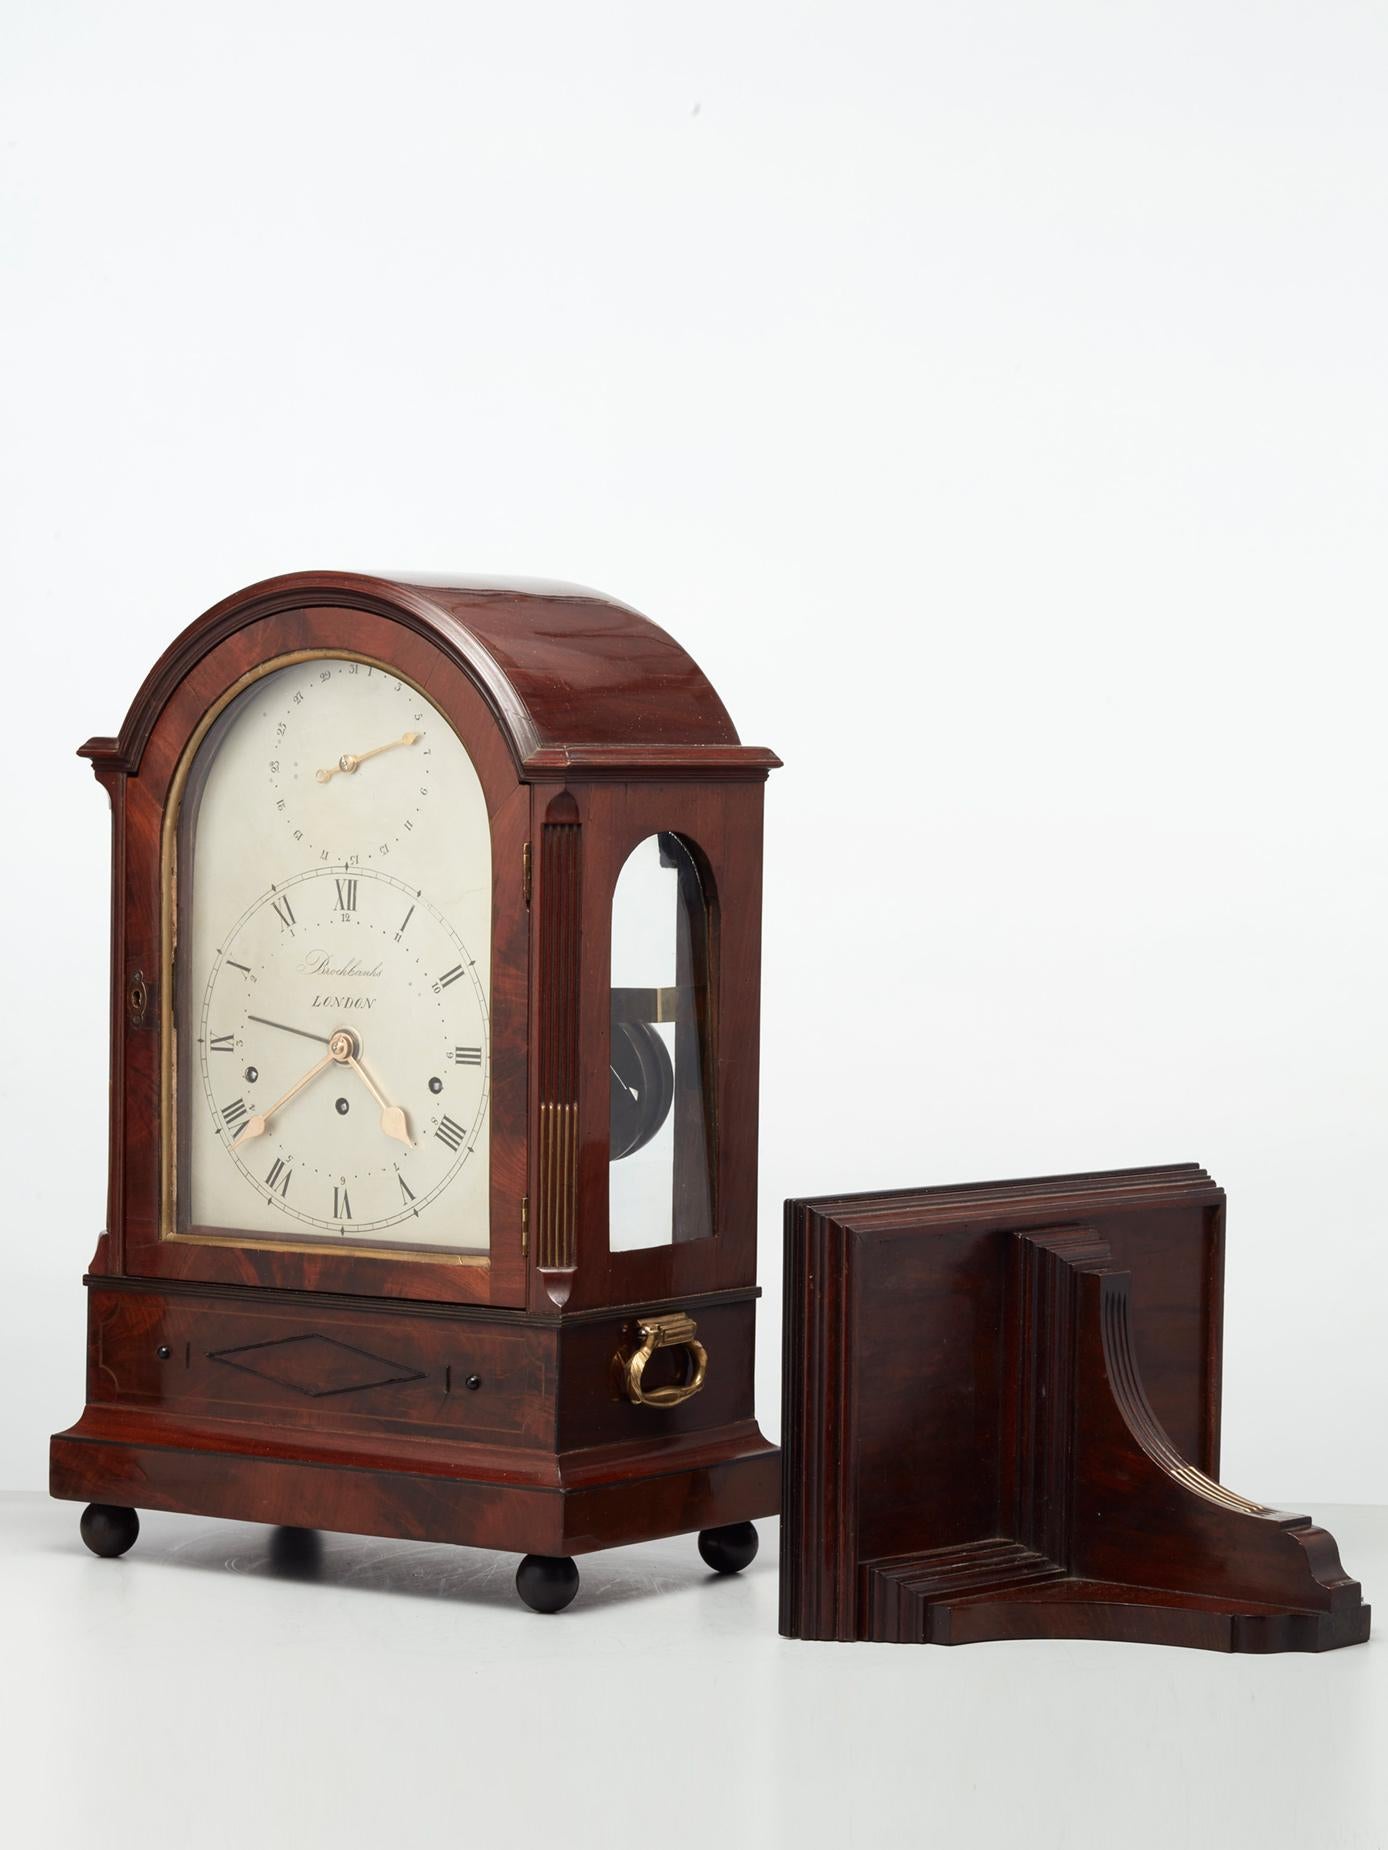 Un reloj de ménsula de caoba de la Regencia inglesa, muy diferente, de mediados del siglo XIX, con ménsula a juego, hacia 1830.

La caja tiene la parte superior arqueada y aberturas laterales de cristal arqueadas; las esquinas están decoradas con